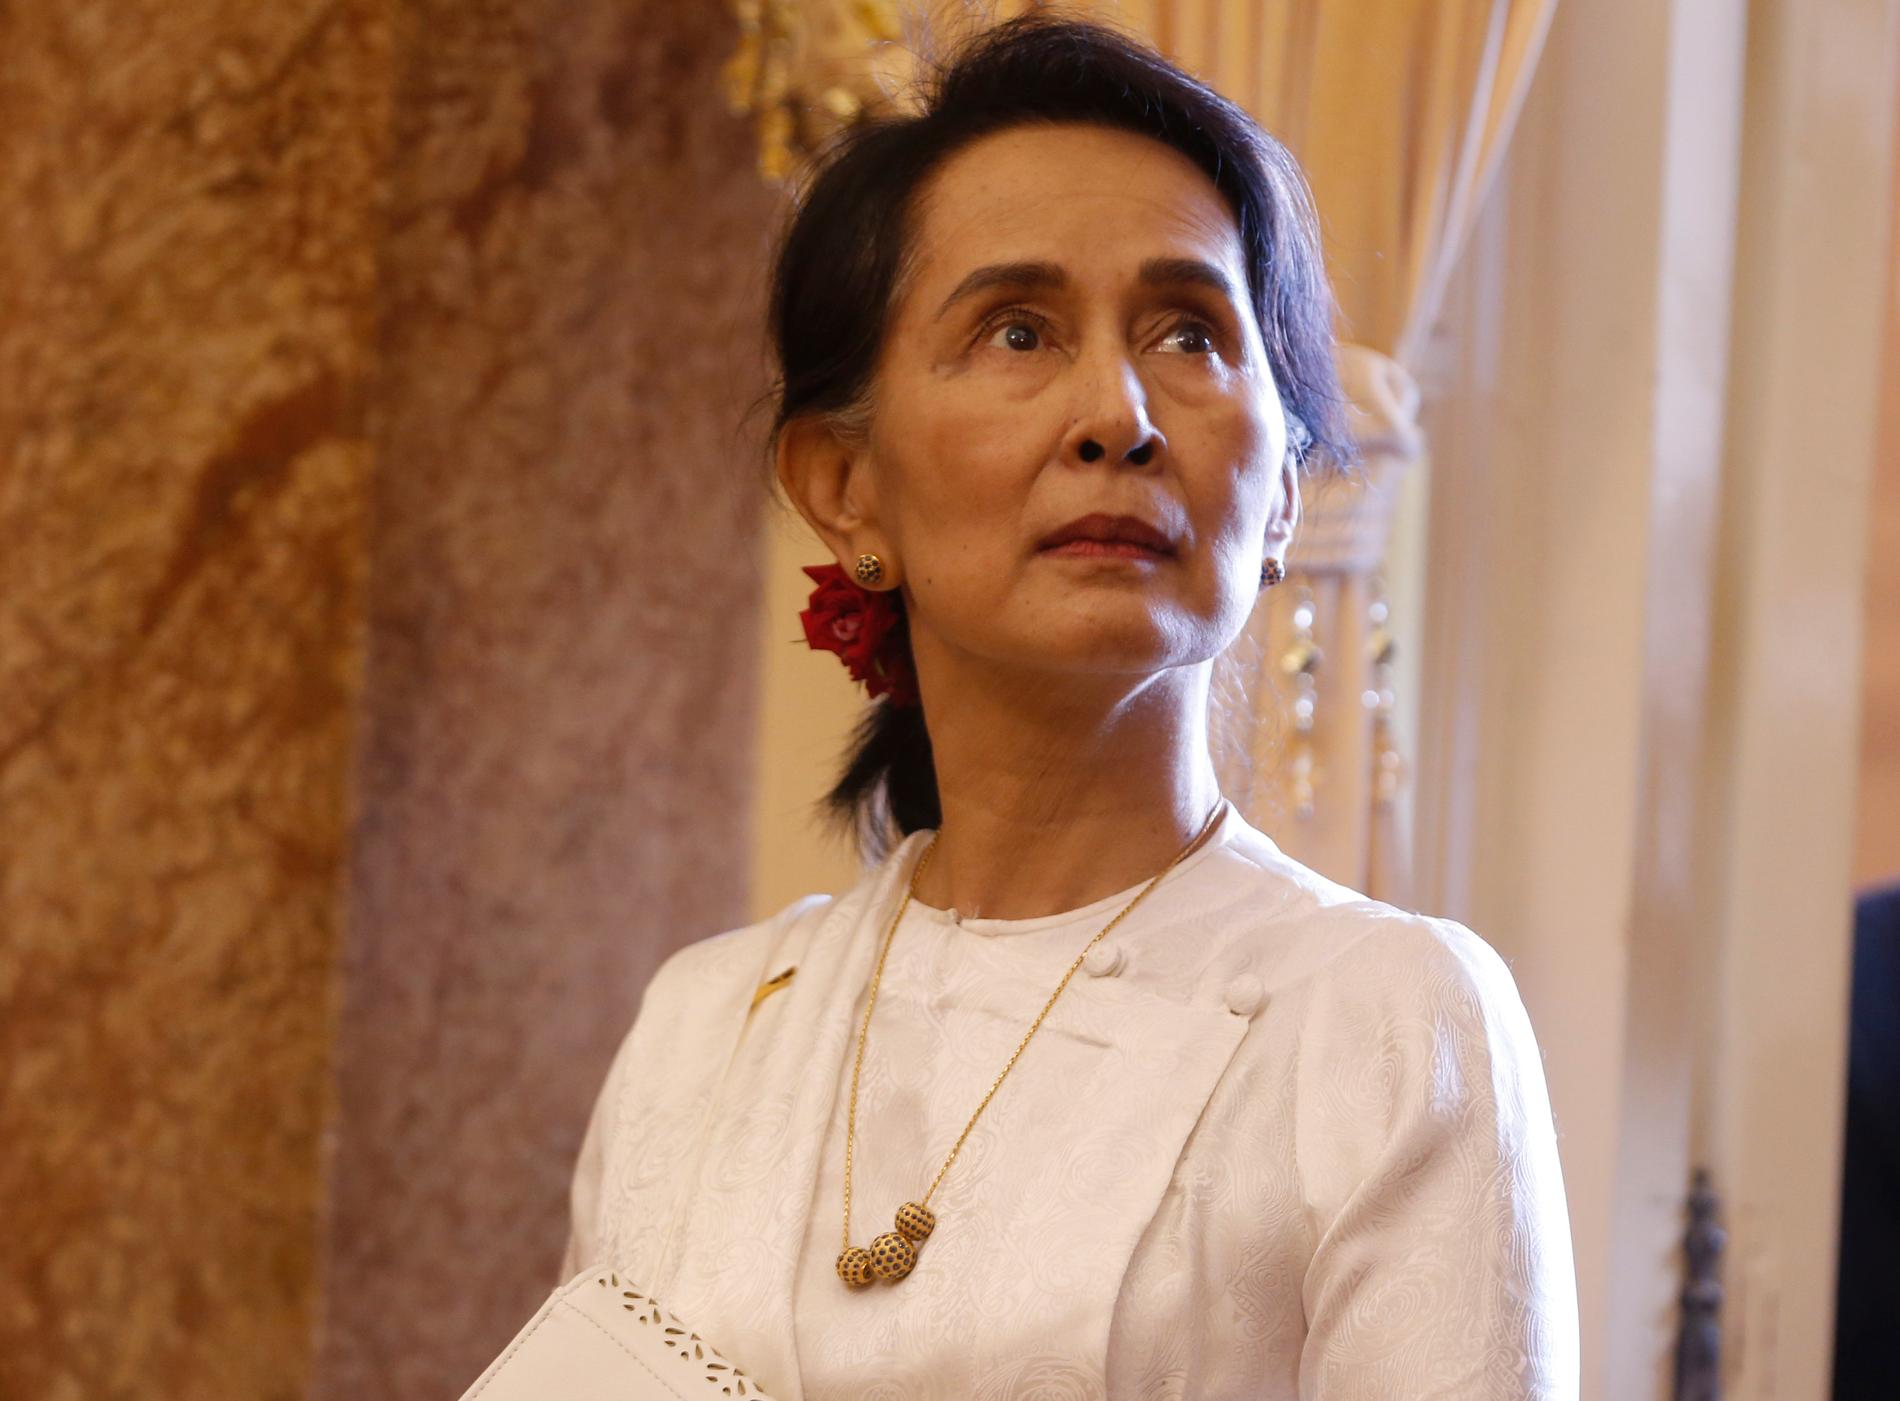 Myanmars ledare Aung San Suu Kyi fick fredspriset 1991. Nu, över 25 år senare, ifrågasätts hennes utnämning när hon anklagas för att inte stoppa militärens misstänkta folkmord på Myanmars muslimska minoritet.